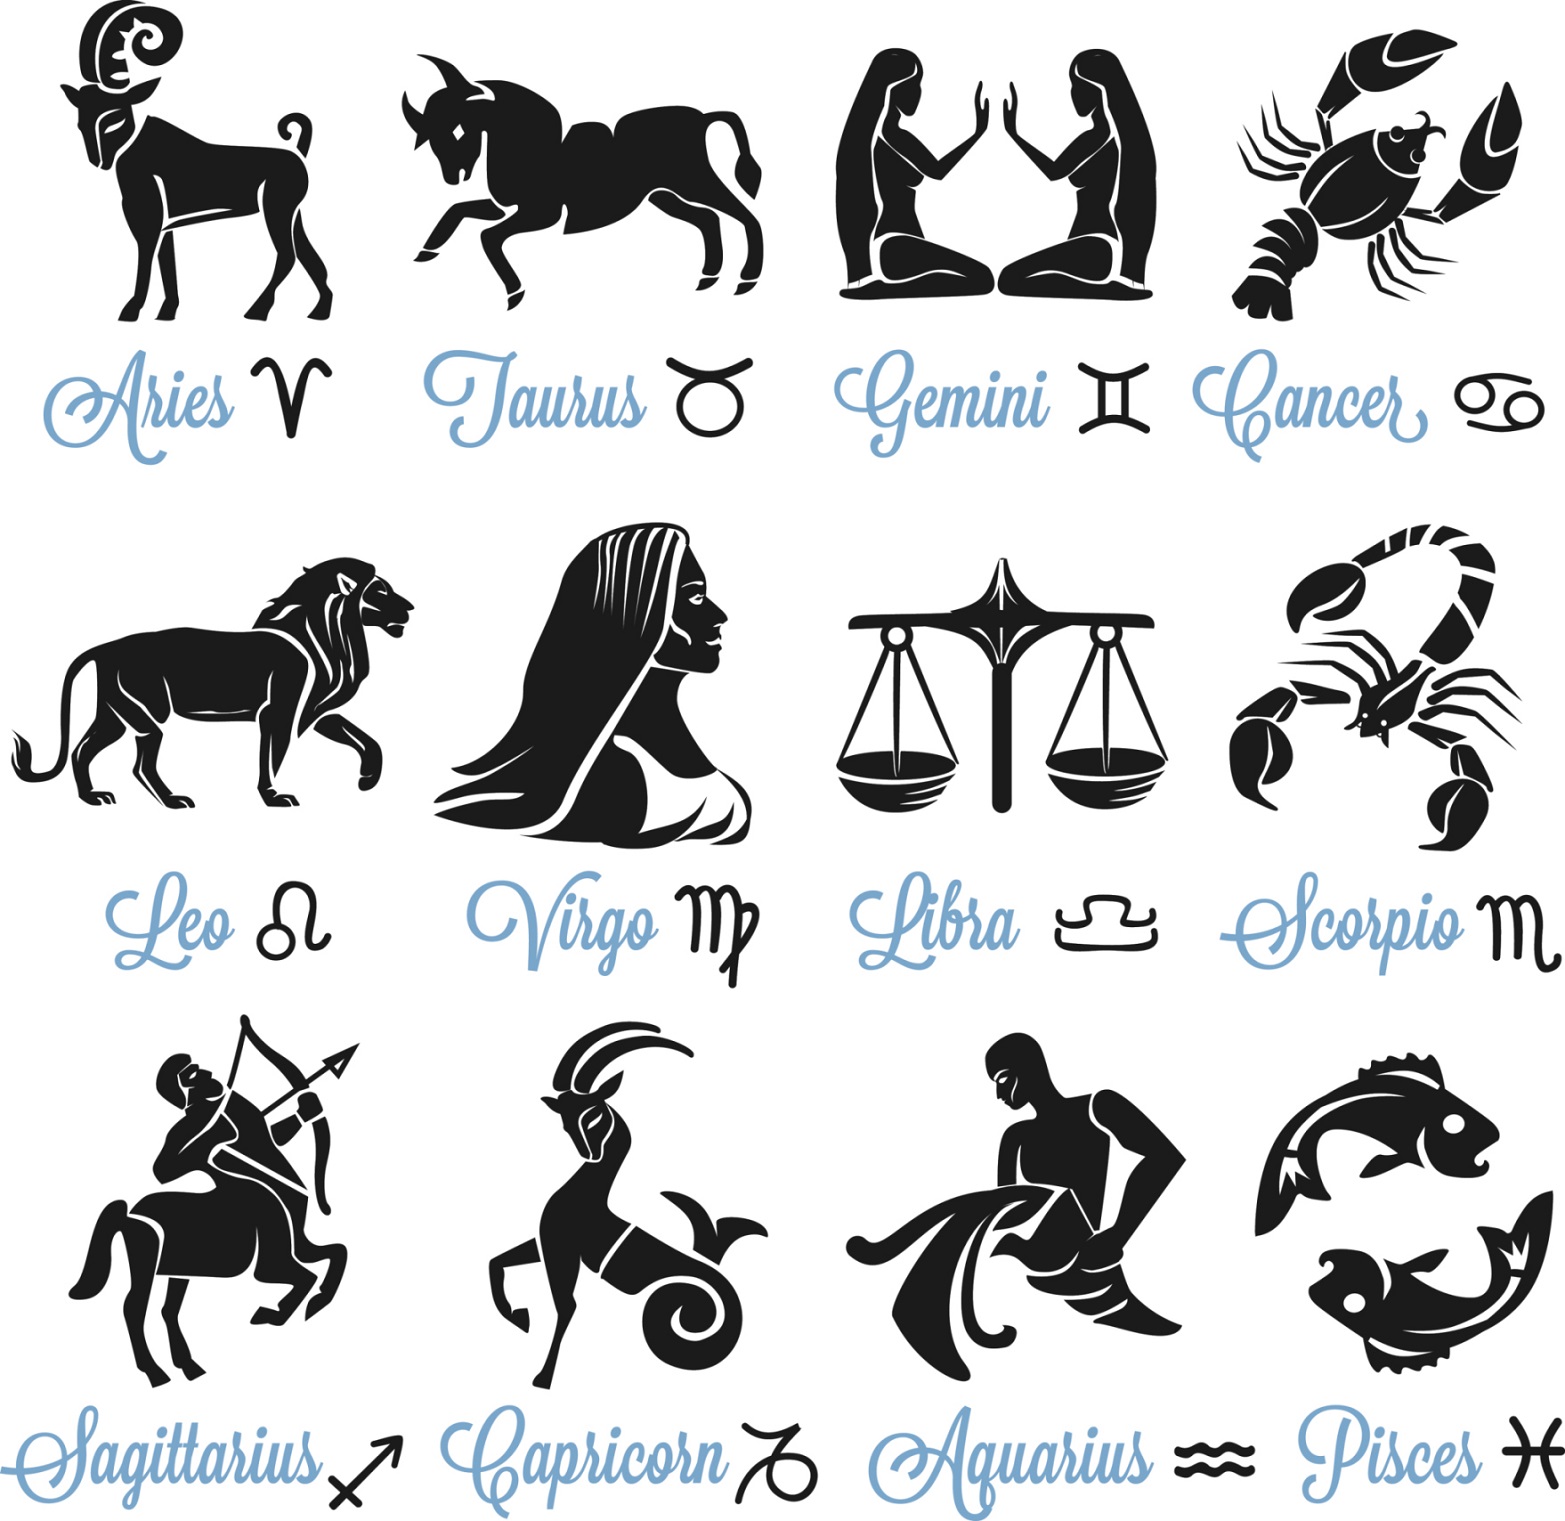 Segni zodiacali, la classifica dei più cattivi